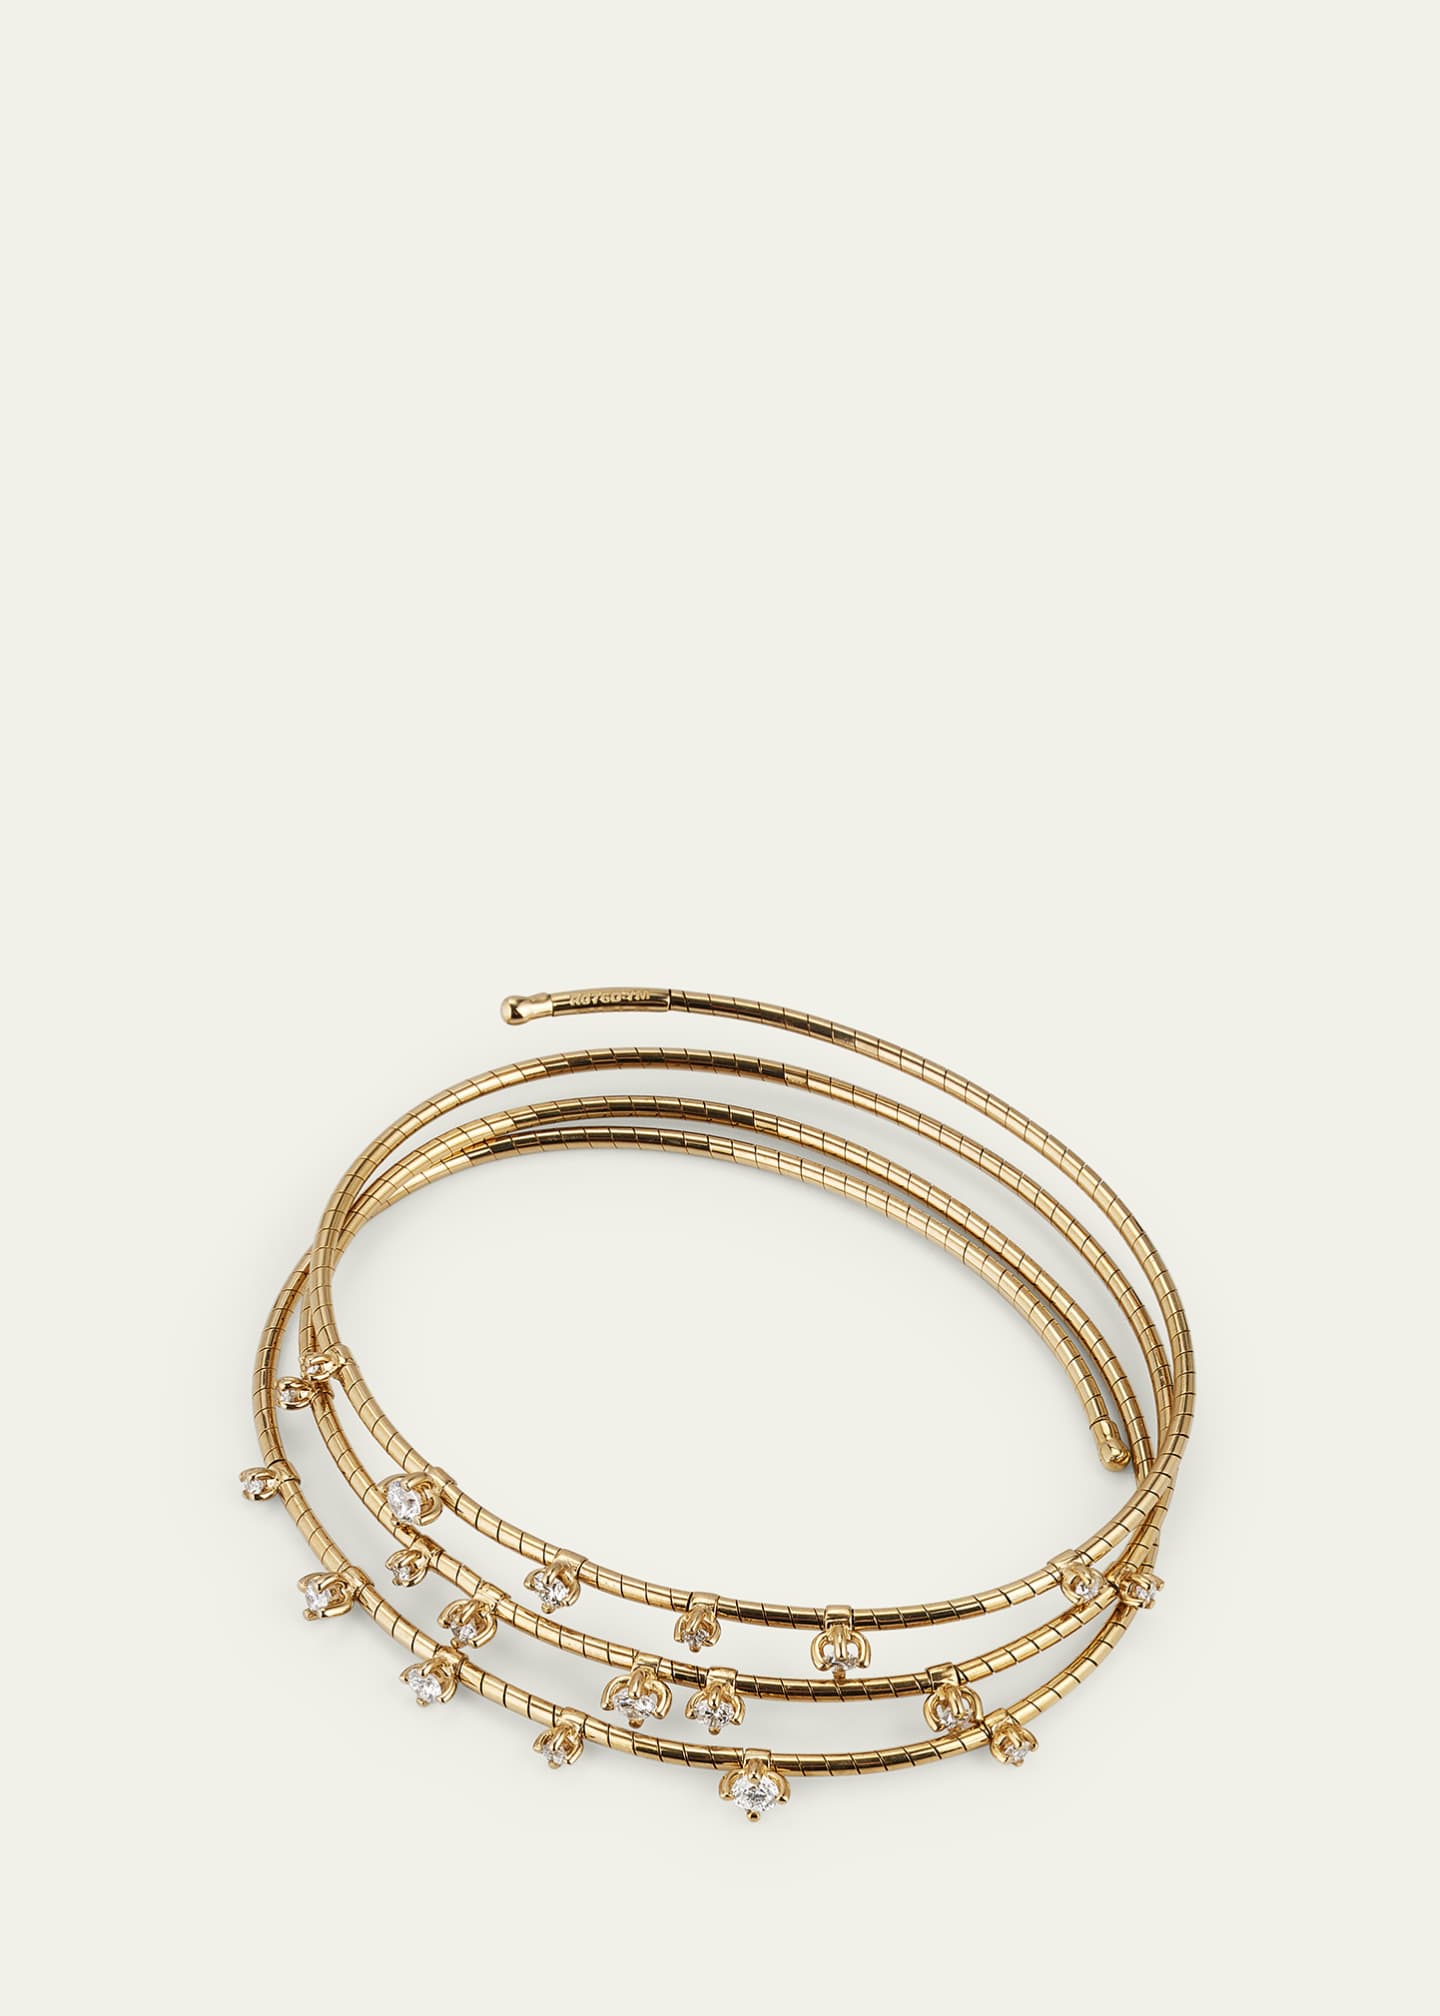 Mattia Cielo | Rose Gold Diamond Cuff Bracelet